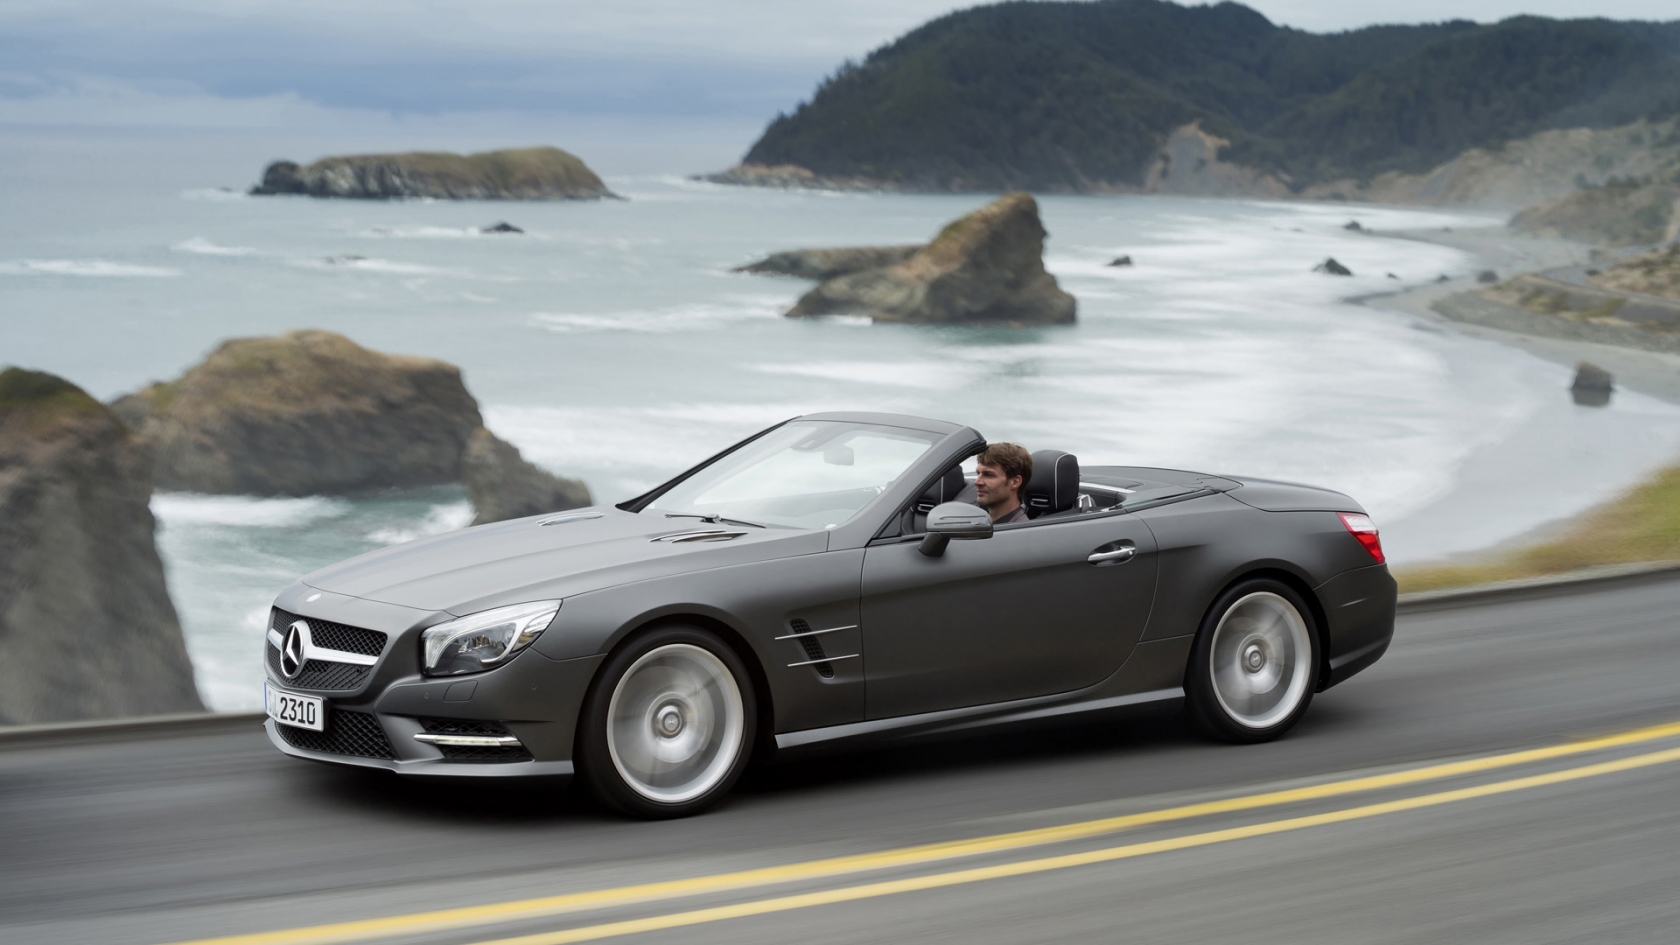 2012 Mercedes SL Dark Silver for 1680 x 945 HDTV resolution